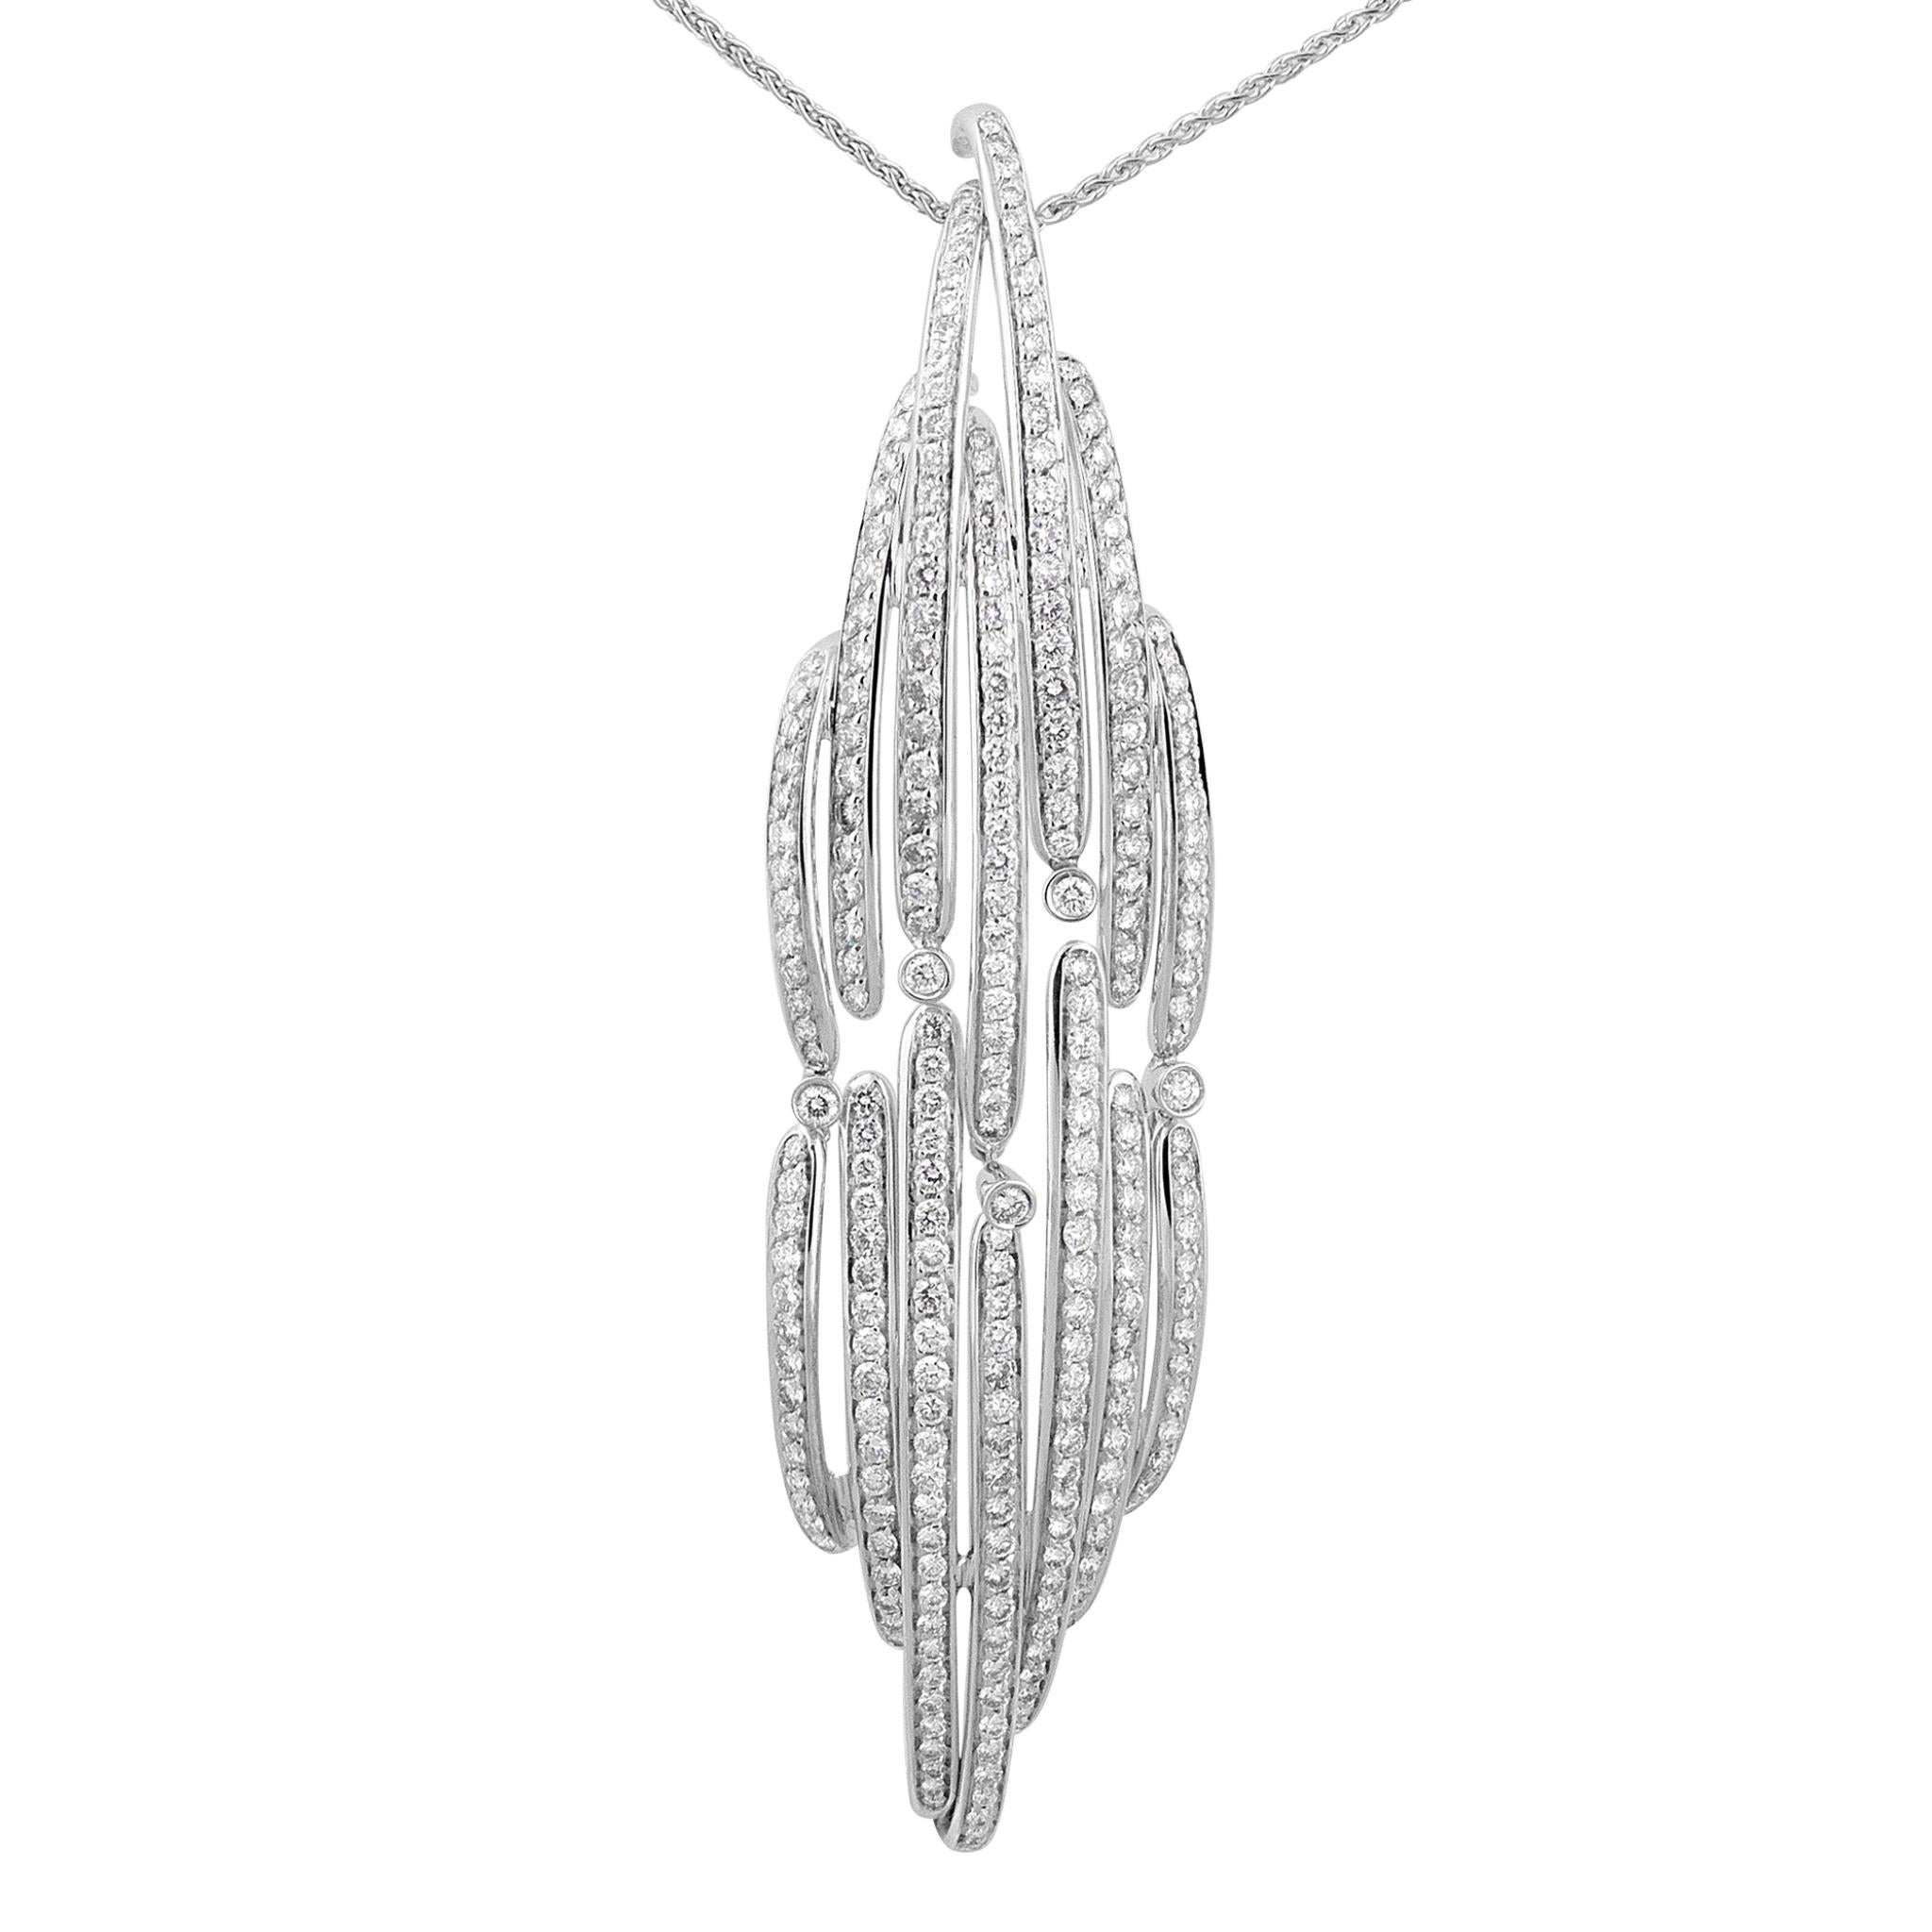 IO SI Necklace
18K White Gold
Diamond: 5.39ctw
Retail price: $38,650.00
SKU: BLU01871
